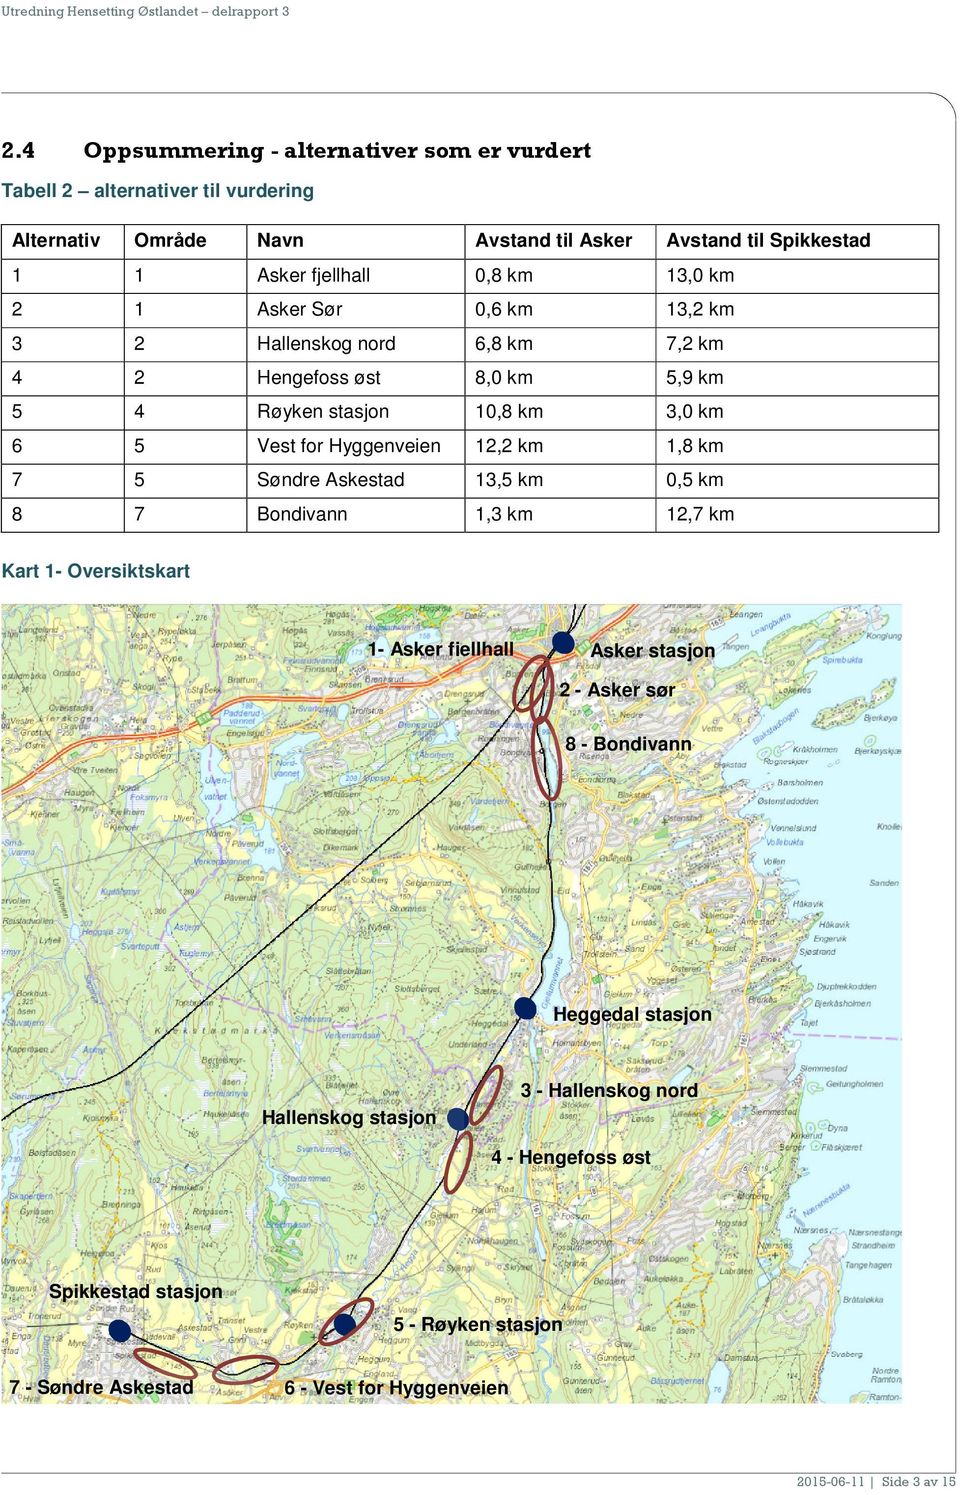 2 1 Asker Sør 0,6 km 13,2 km 3 2 Hallenskog nord 6,8 km 7,2 km 4 2 Hengefoss øst 8,0 km 5,9 km 5 4 Røyken stasjon 10,8 km 3,0 km 6 5 Vest for Hyggenveien 12,2 km 1,8 km 7 5 Søndre